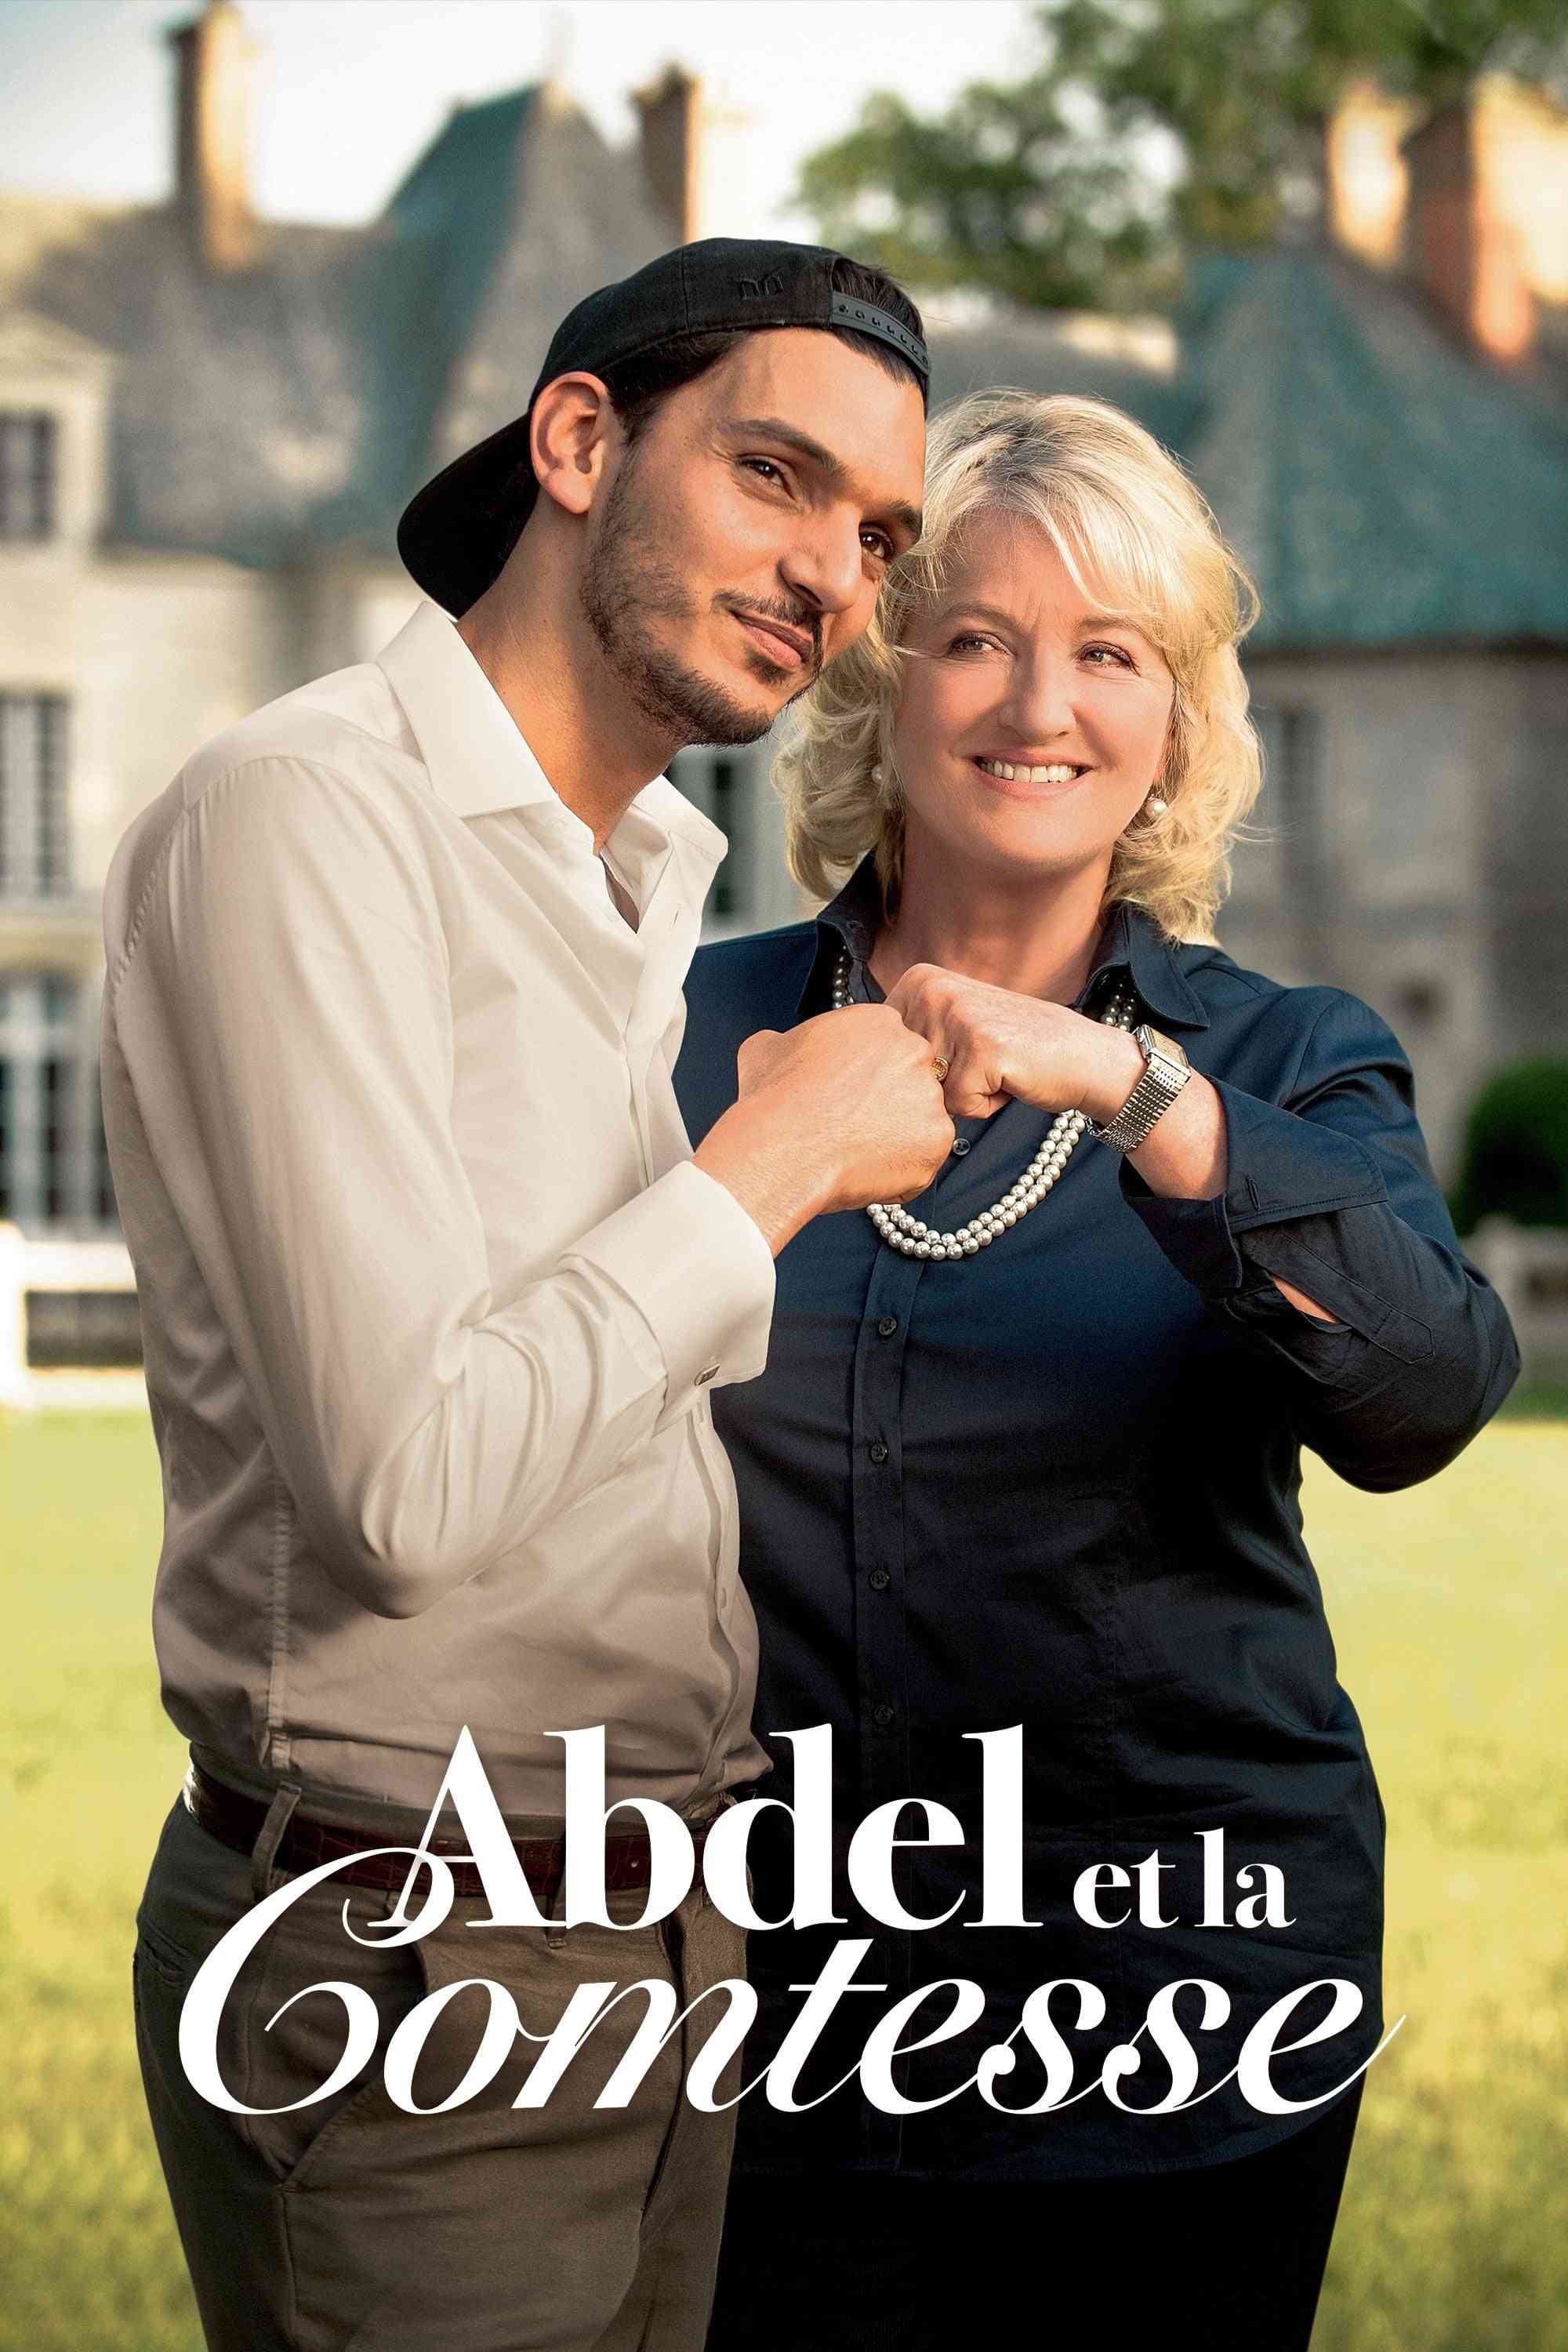 Abdel et la Comtesse  (2018),Online za darmo